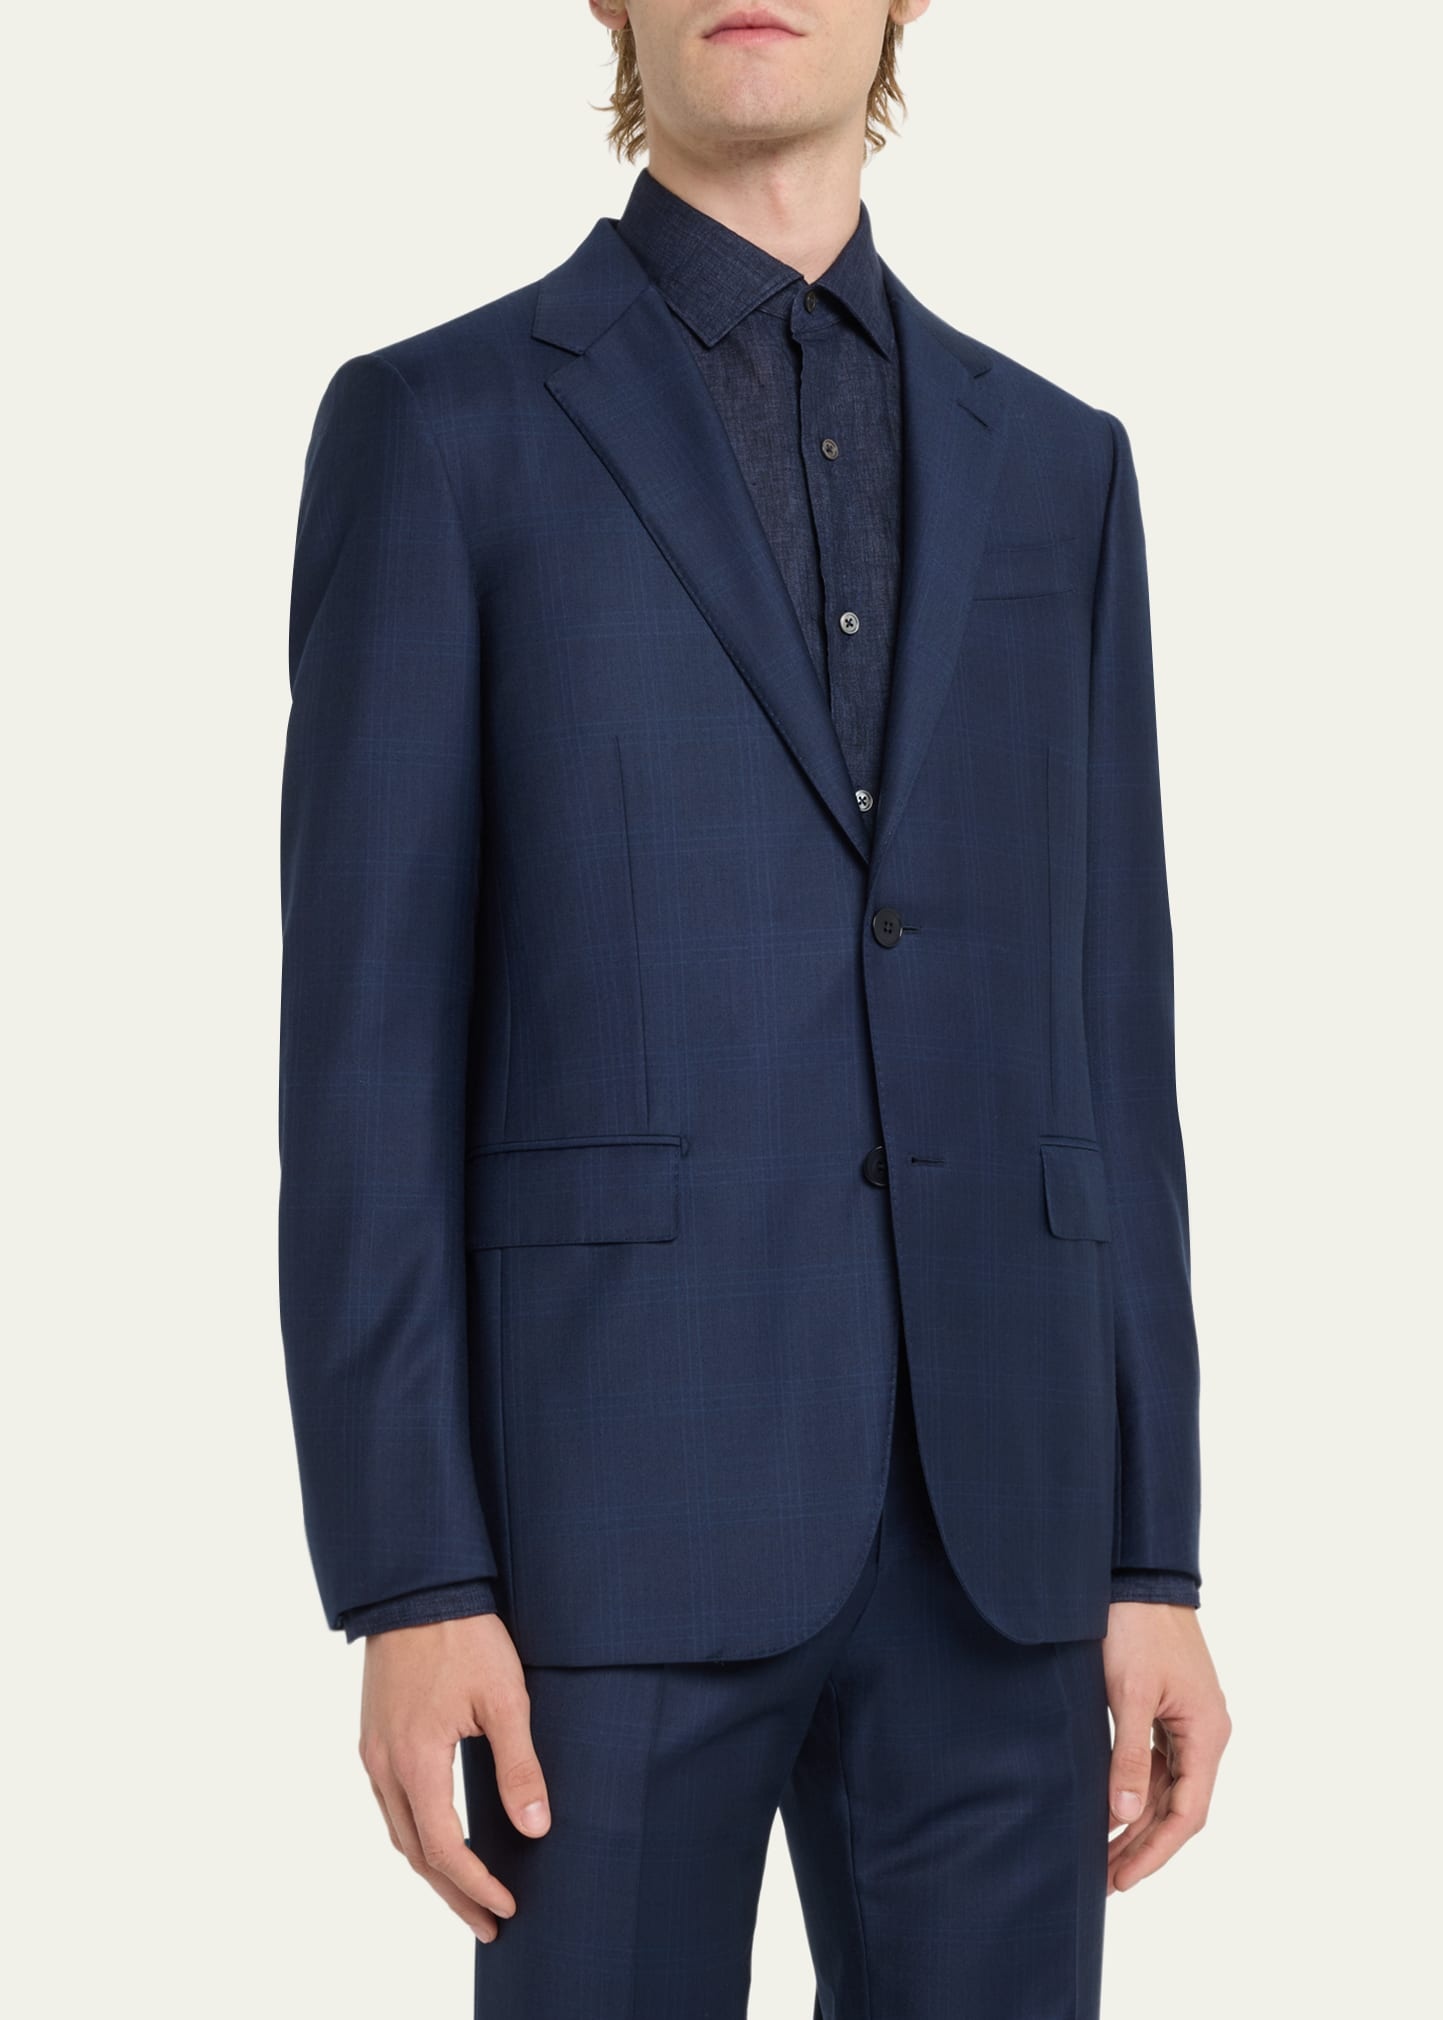 Men's Tonal Plaid Wool Suit - 4